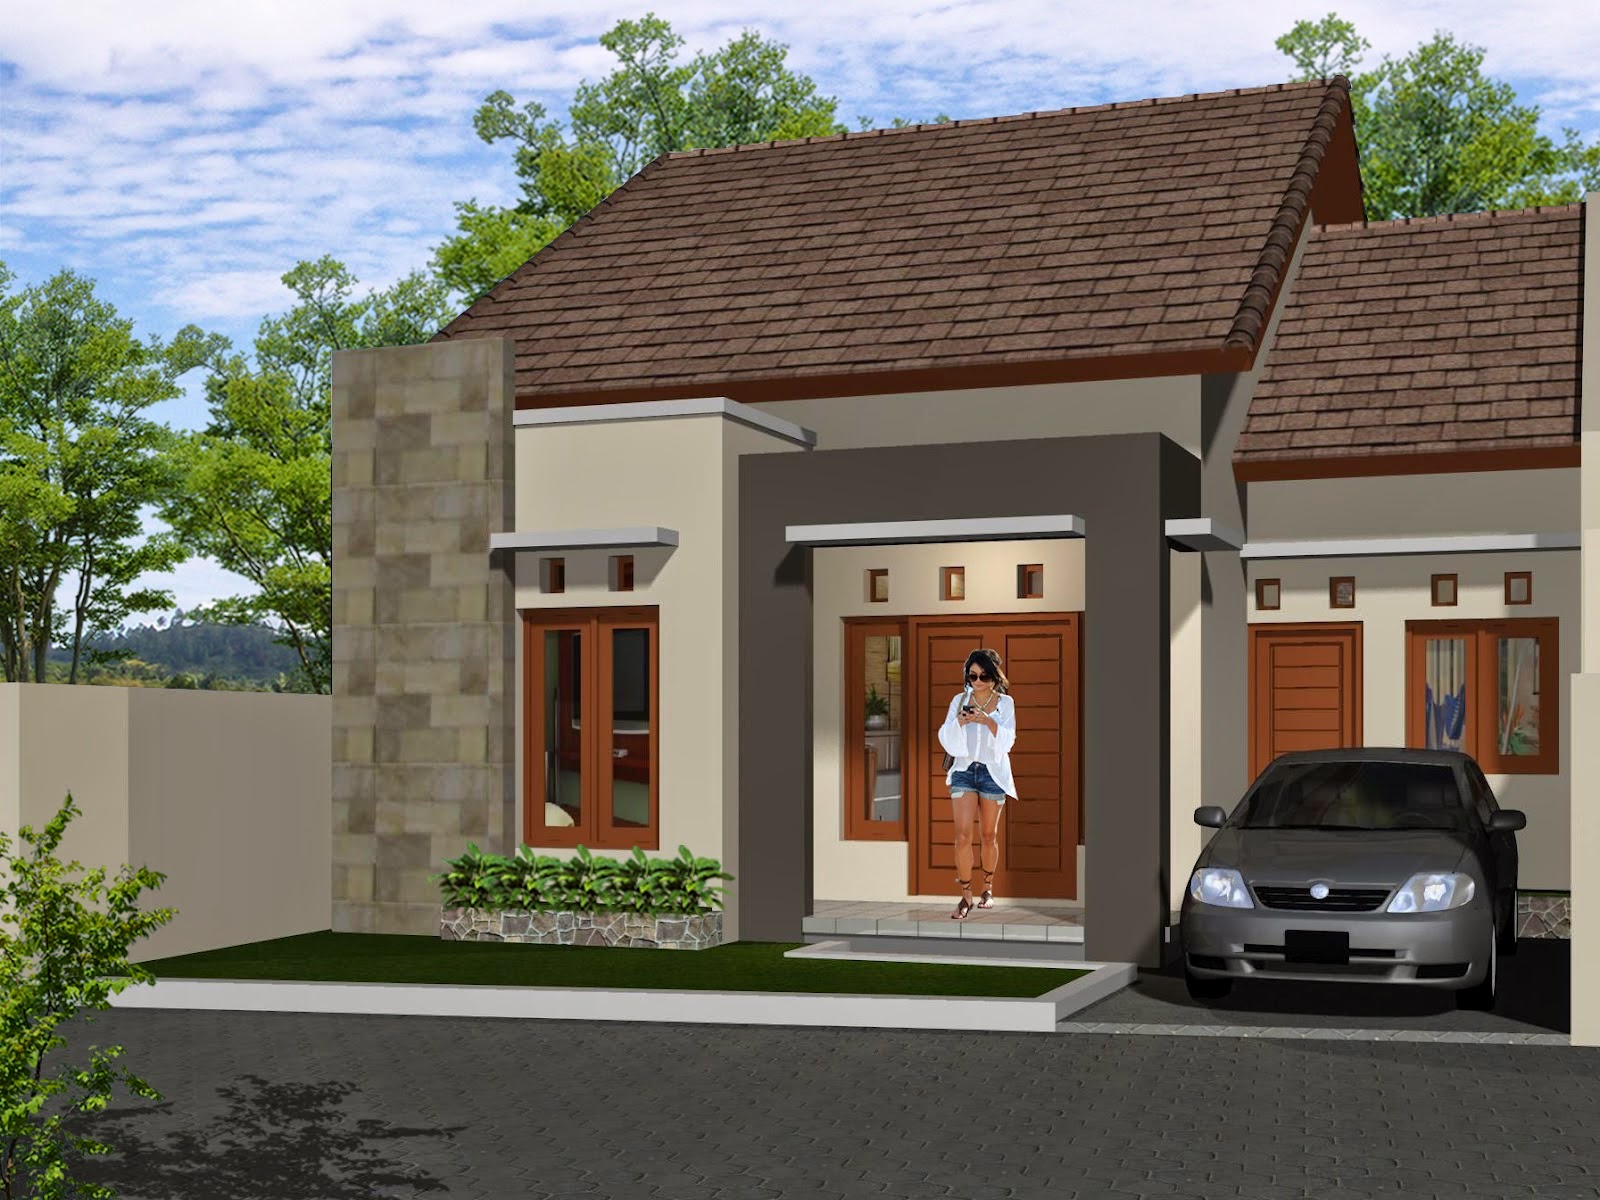 Gambar Rumah Minimalis Satu Lantai Terbaru 2015 | Desain Rumah Idaman